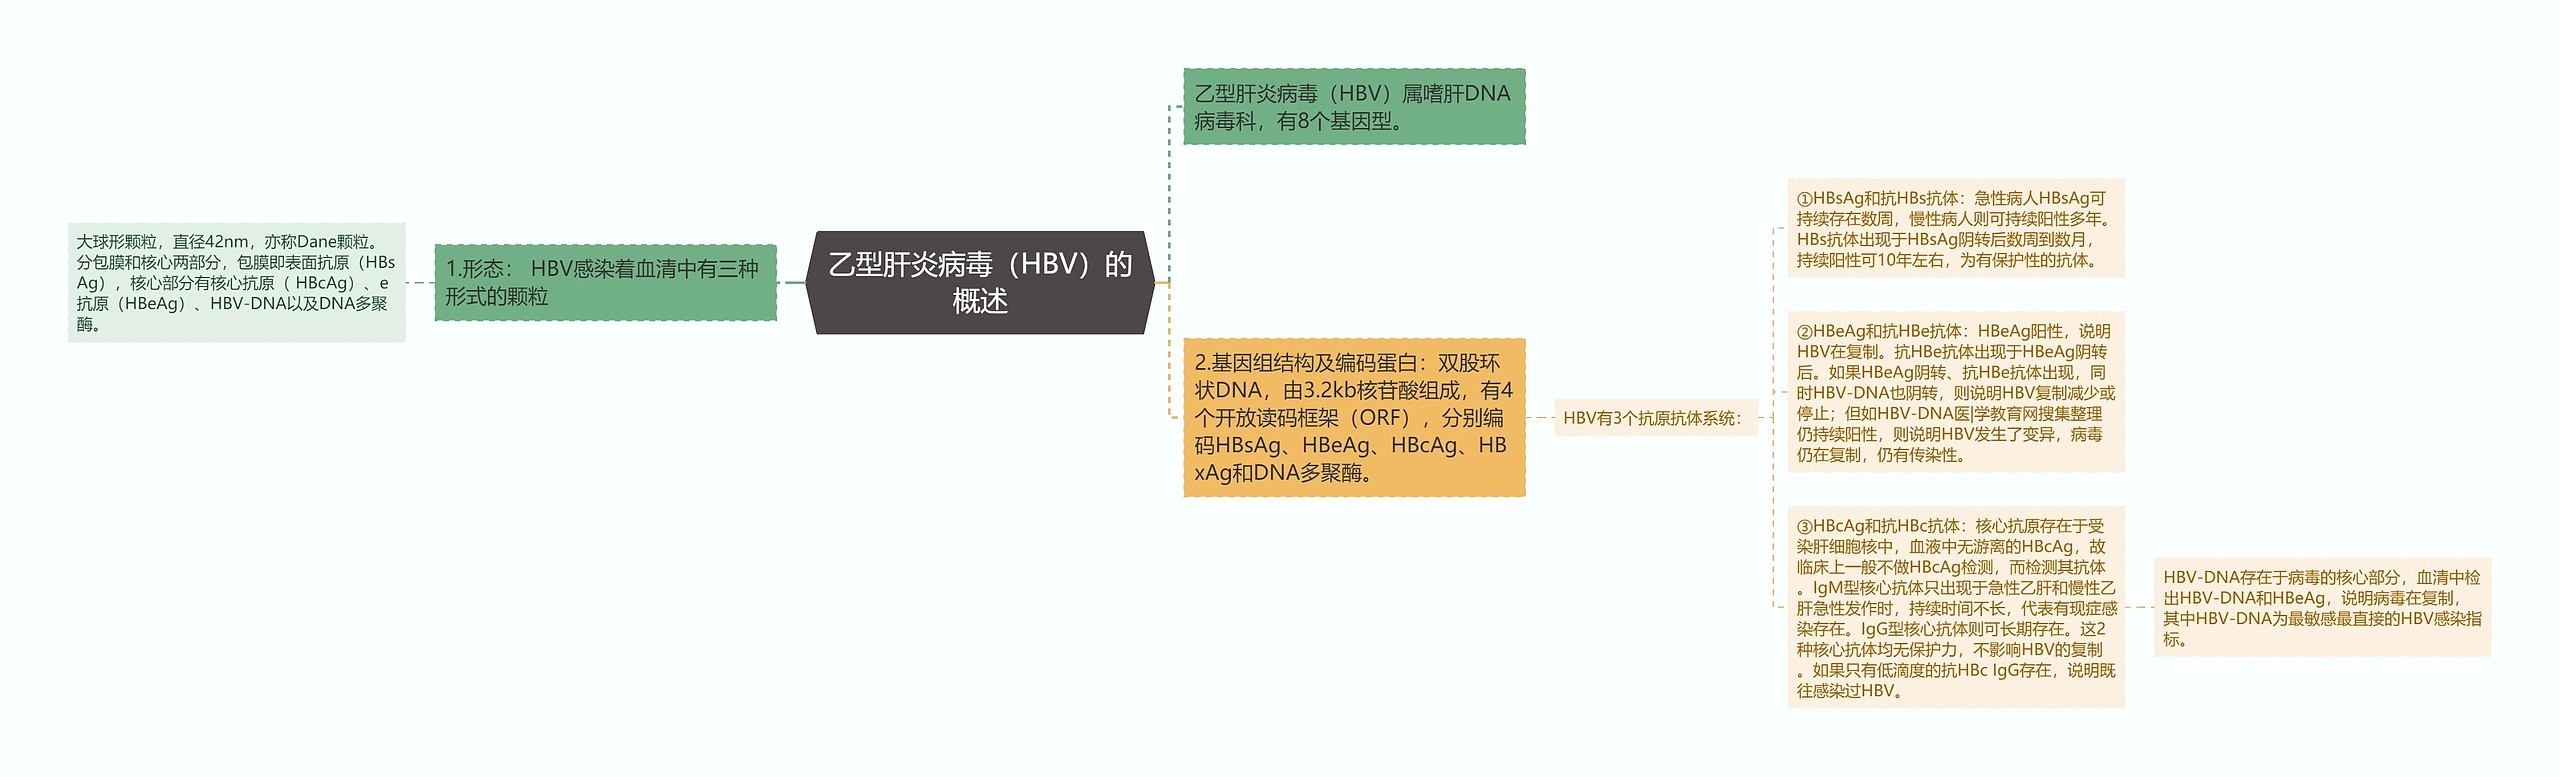 乙型肝炎病毒（HBV）的概述